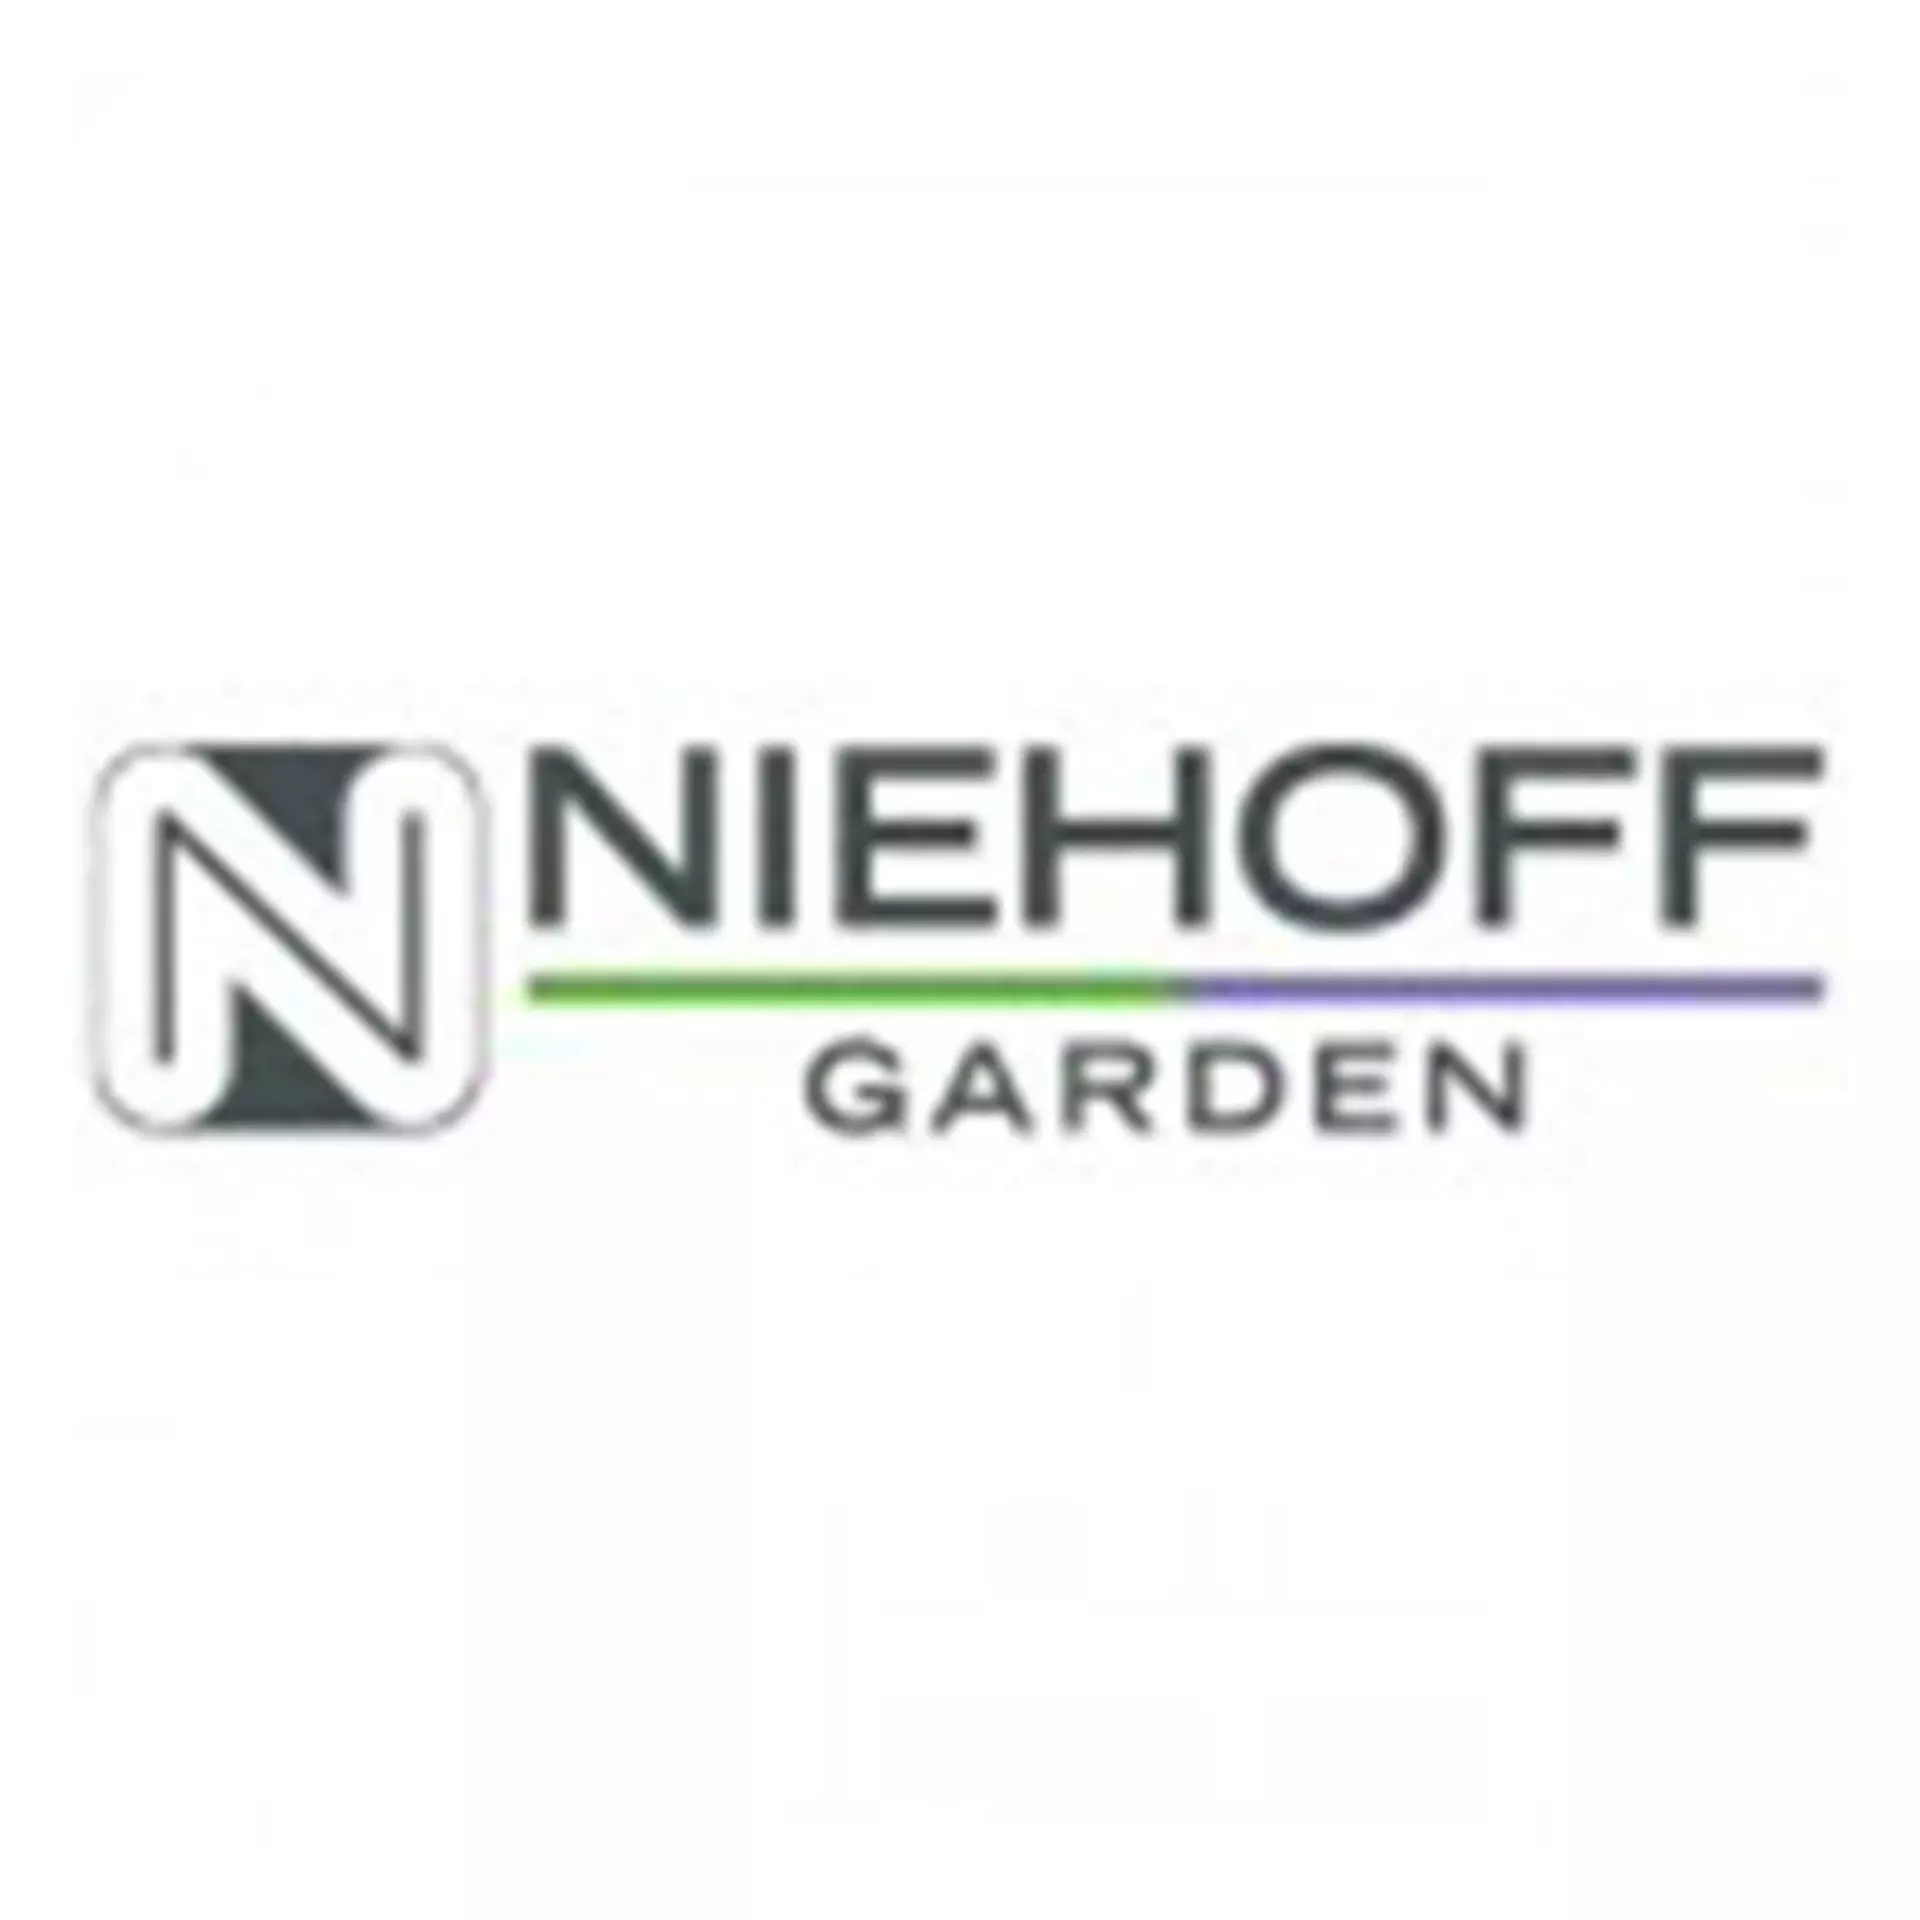 Niehoff Contract GmbH Garden